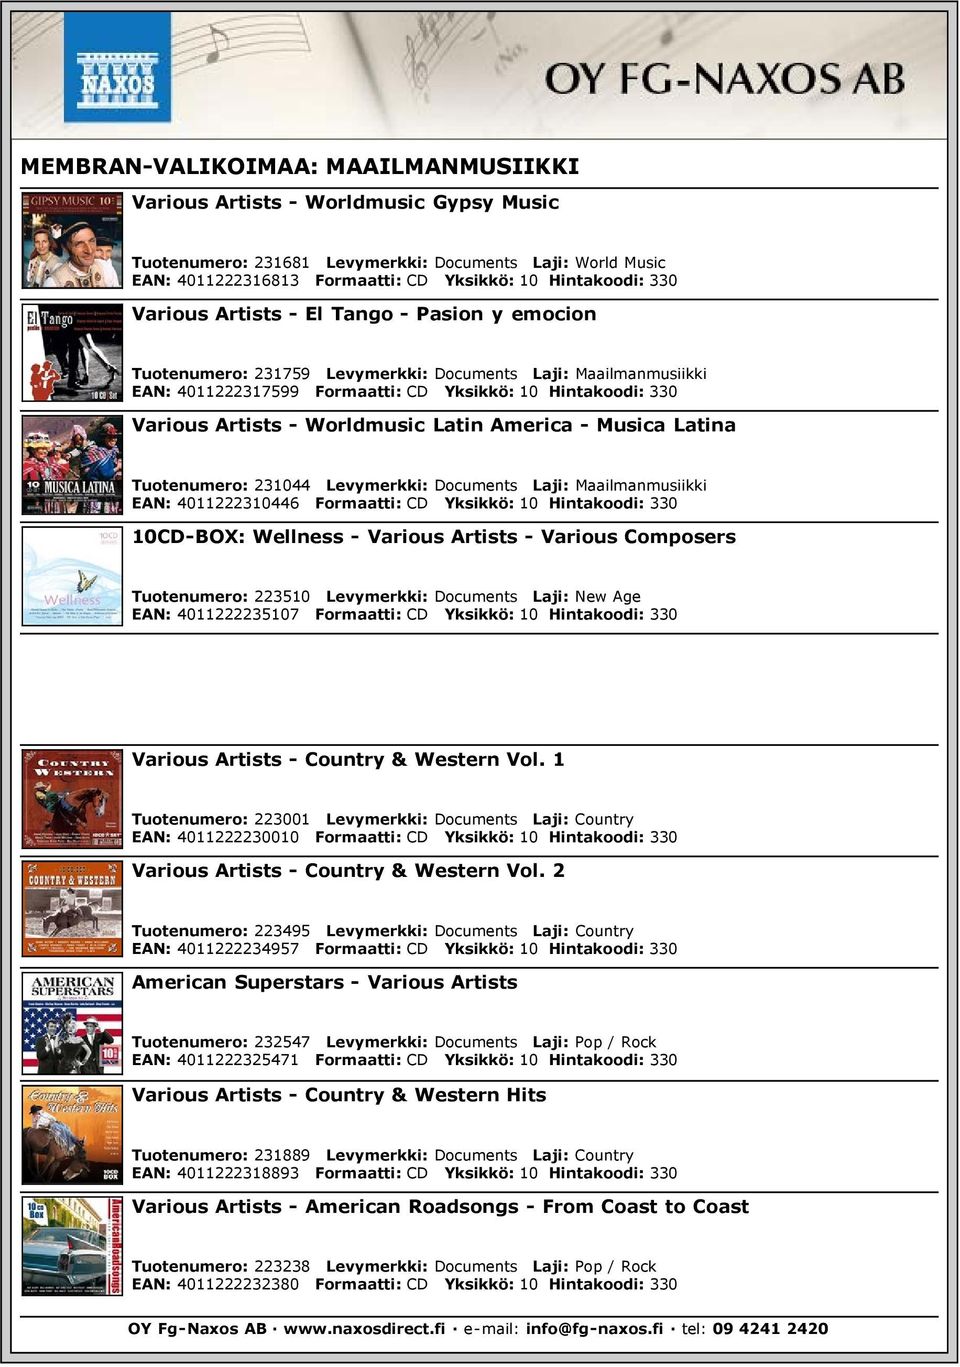 Worldmusic Latin America - Musica Latina Tuotenumero: 231044 Levymerkki: Documents Laji: Maailmanmusiikki EAN: 4011222310446 Formaatti: CD Yksikkö: 10 Hintakoodi: 330 10CD-BOX: Wellness - Various